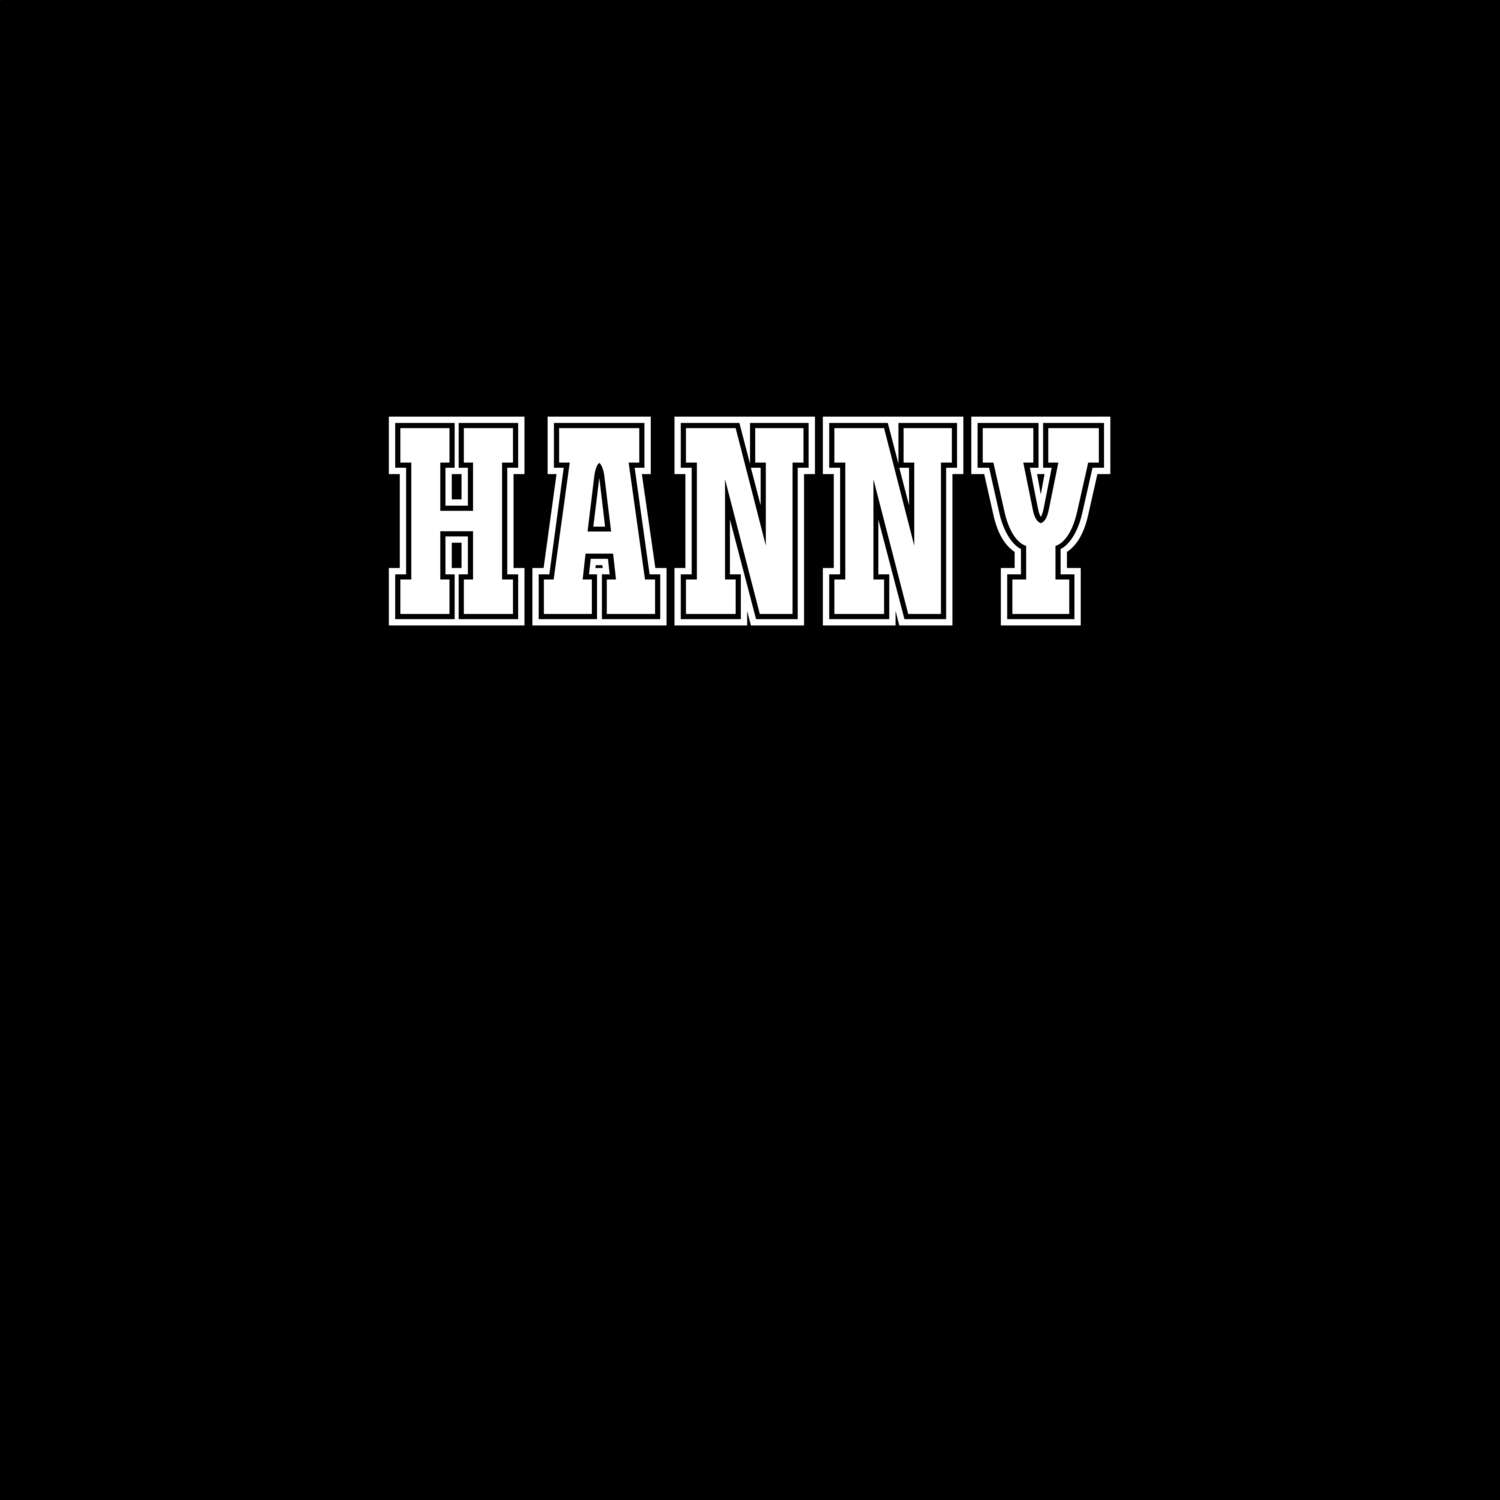 Hanny T-Shirt »Classic«